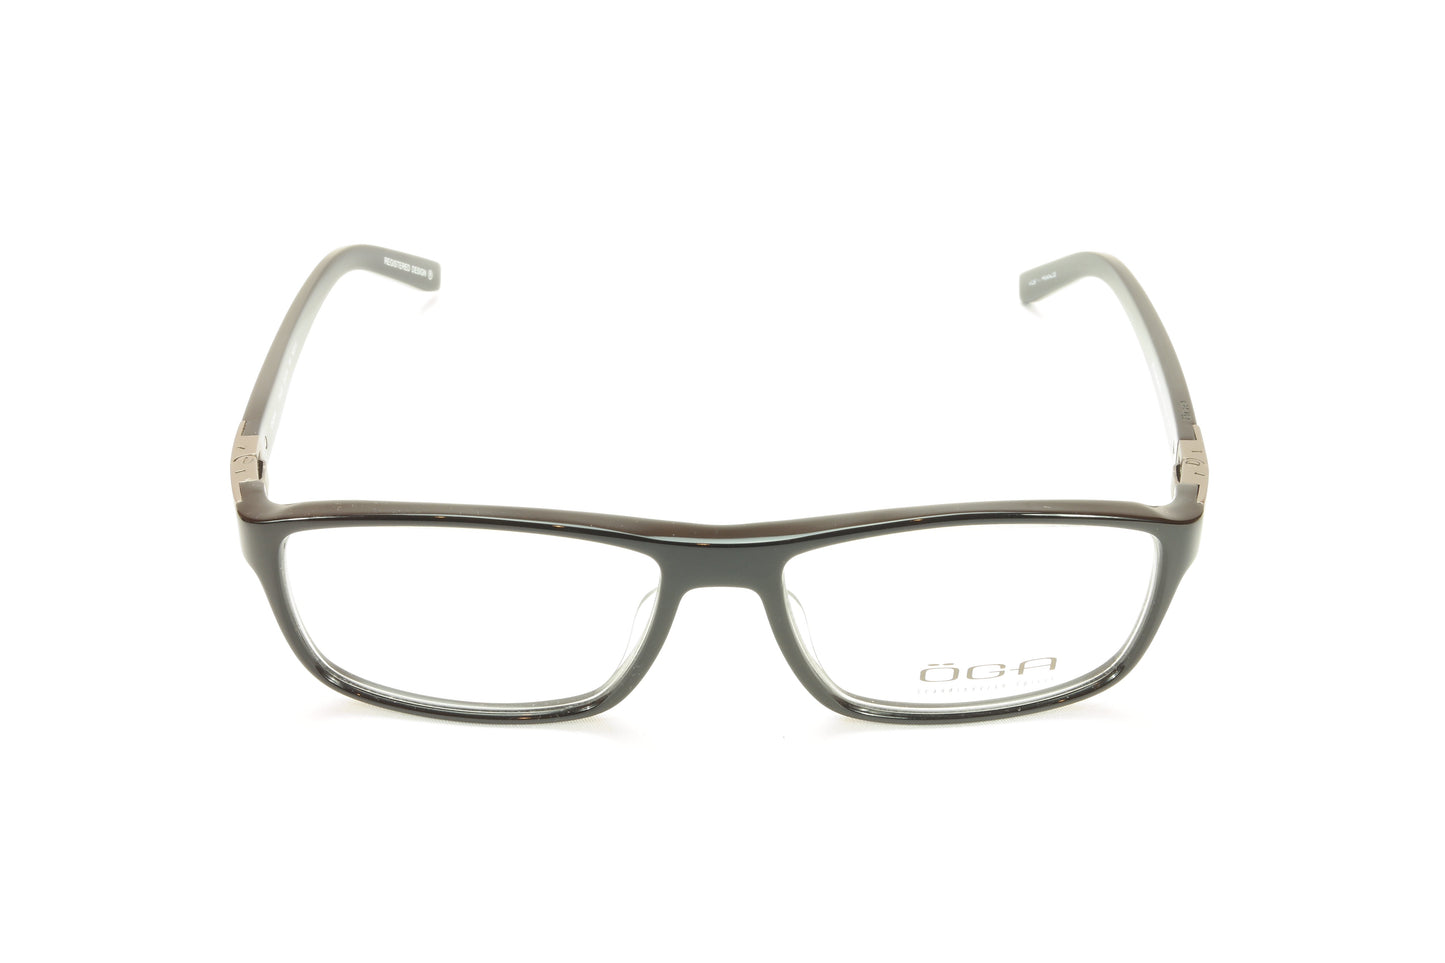 OGA Morel Eyeglasses Frame 73420 NG010 Black Acetate France Made - Frame Bay